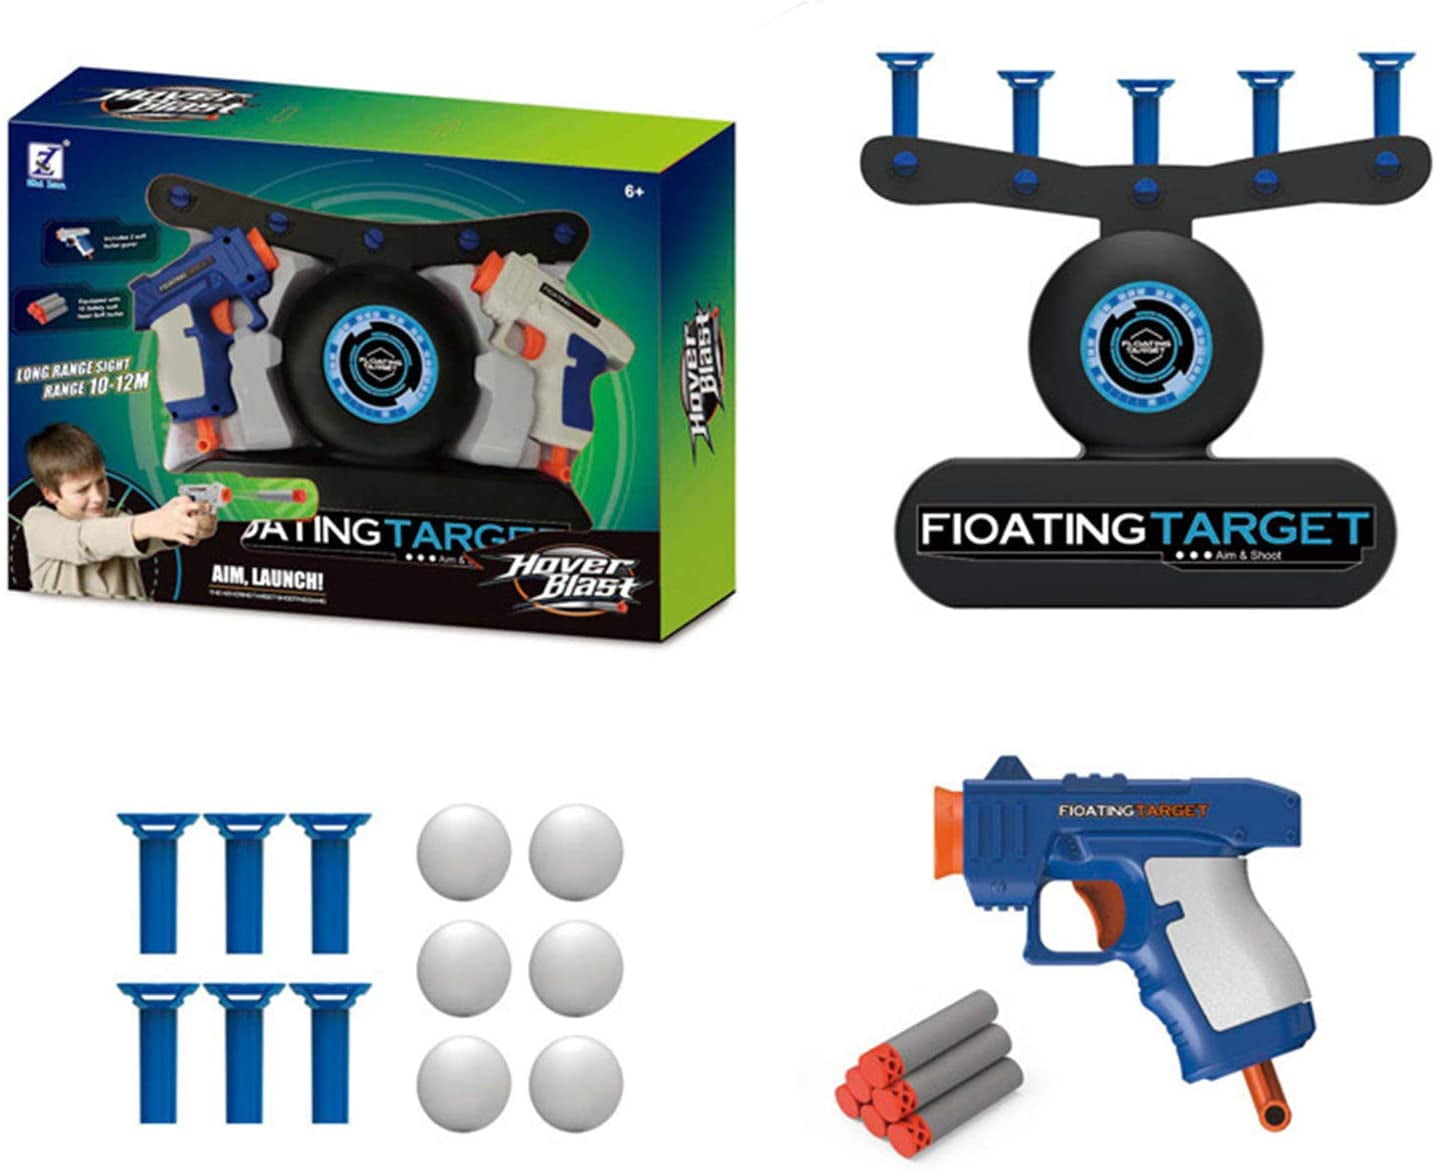 Airshot Game Foam Dart Floating Target Blaster Shooting Ball Kid's Xmas Gift LZ 